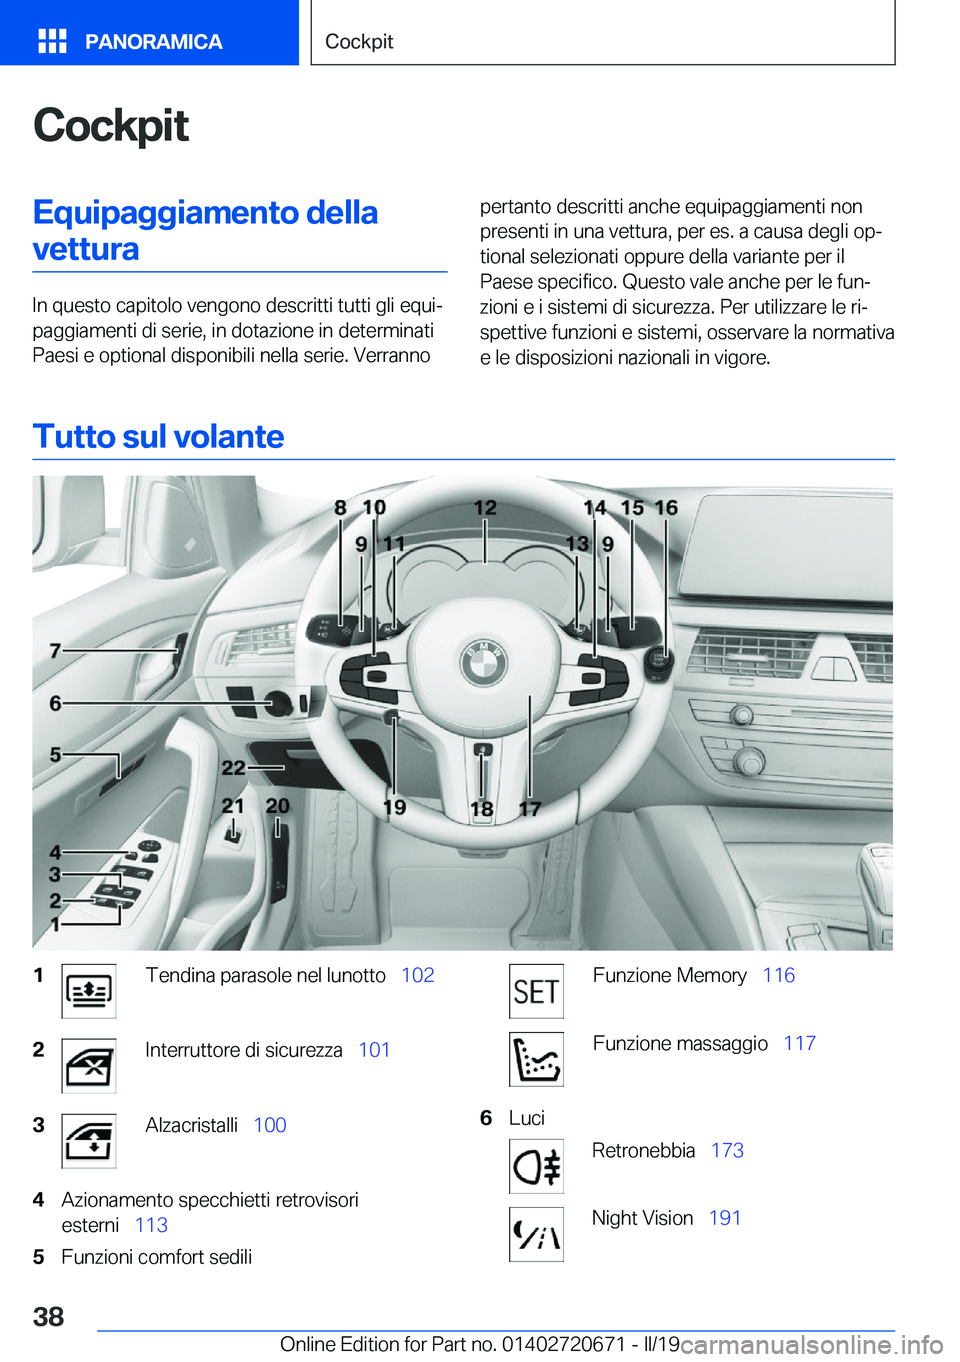 BMW M5 2019  Libretti Di Uso E manutenzione (in Italian) �C�o�c�k�p�i�t�E�q�u�i�p�a�g�g�i�a�m�e�n�t�o��d�e�l�l�a�v�e�t�t�u�r�a
�I�n��q�u�e�s�t�o��c�a�p�i�t�o�l�o��v�e�n�g�o�n�o��d�e�s�c�r�i�t�t�i��t�u�t�t�i��g�l�i��e�q�u�iª
�p�a�g�g�i�a�m�e�n�t�i�